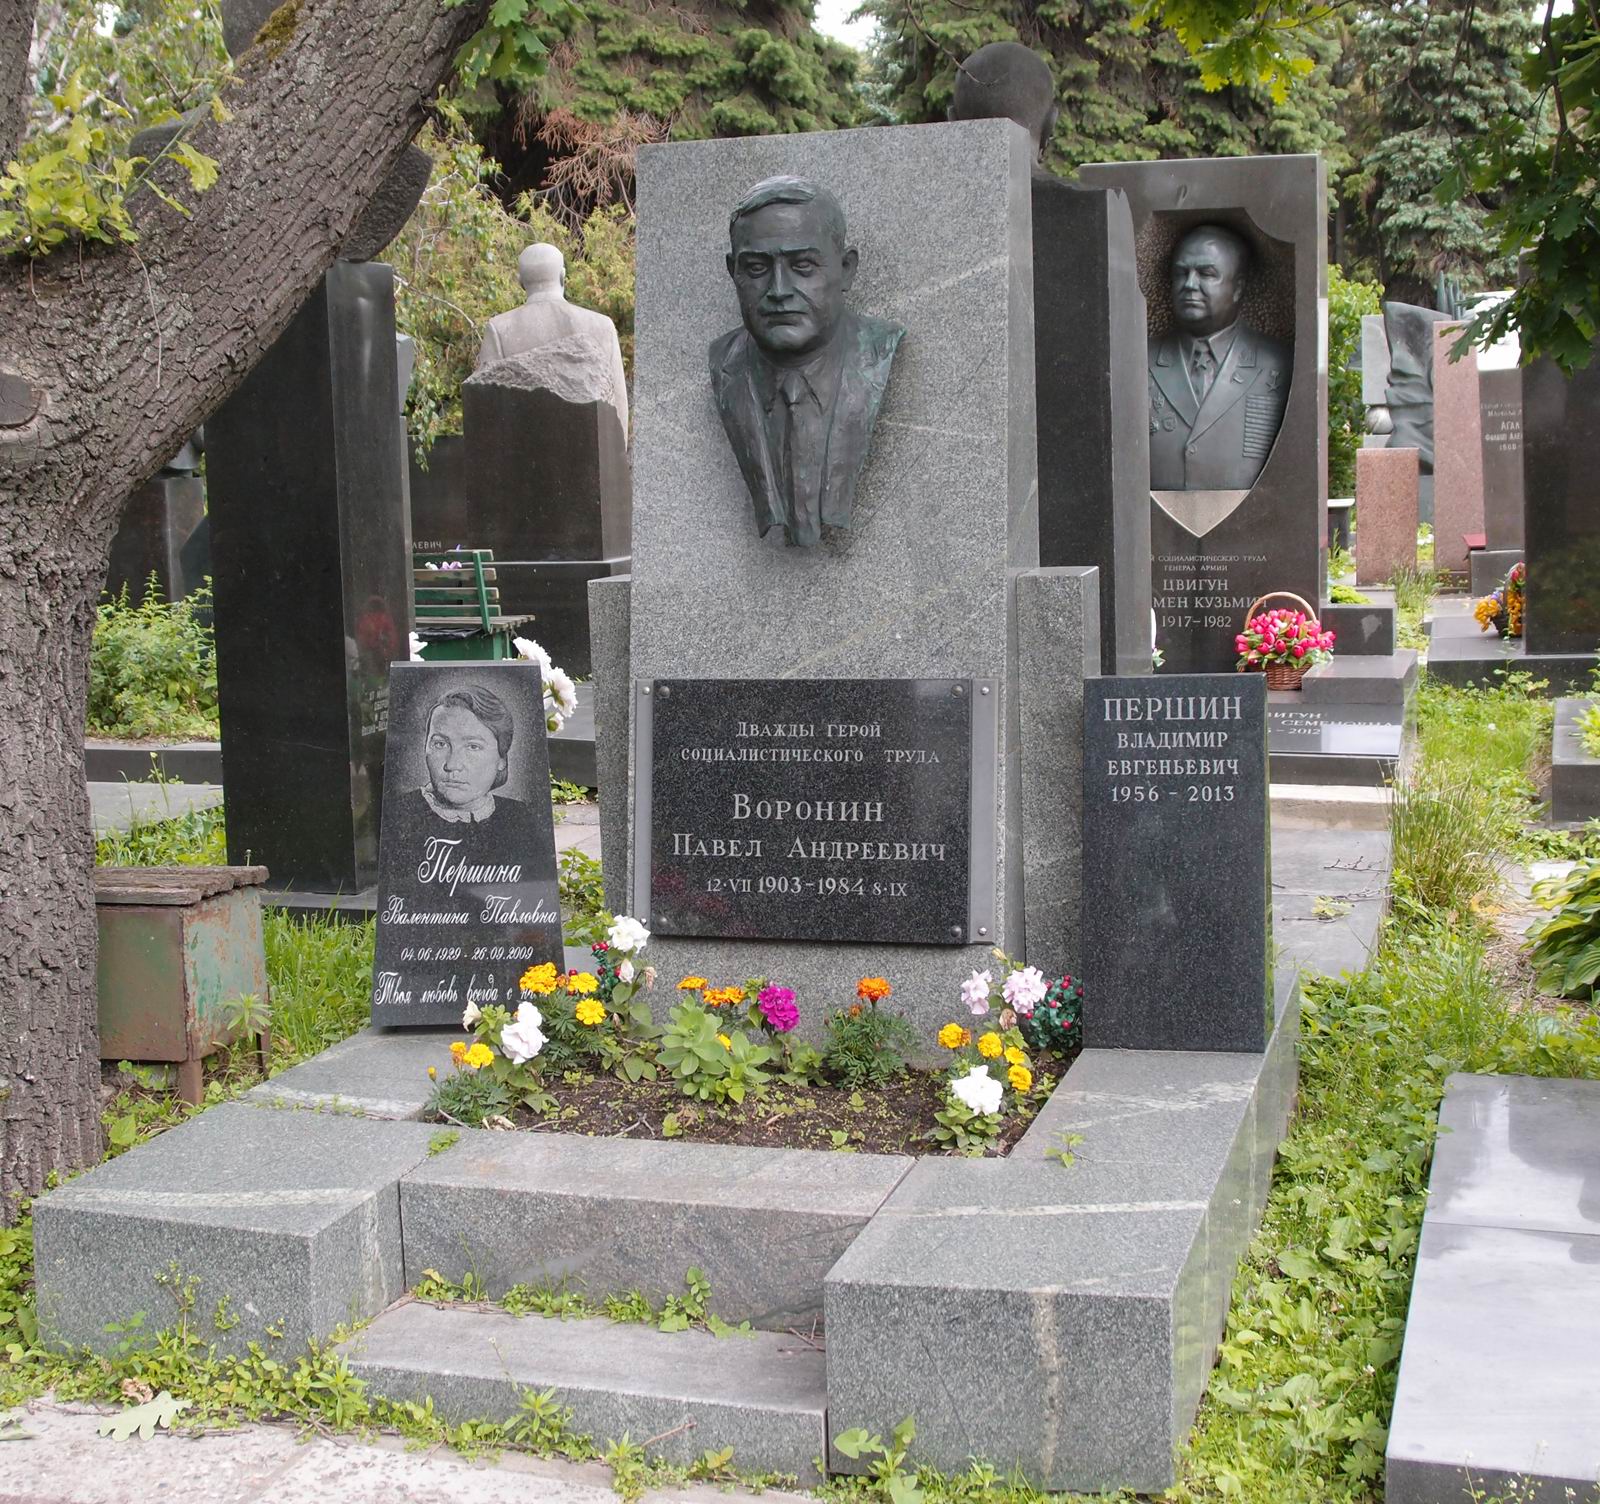 Памятник на могиле Воронина П.А. (1903-1984), ск. М.Воскресенская, арх. С.Образцов, на Новодевичьем кладбище (7-20-13).